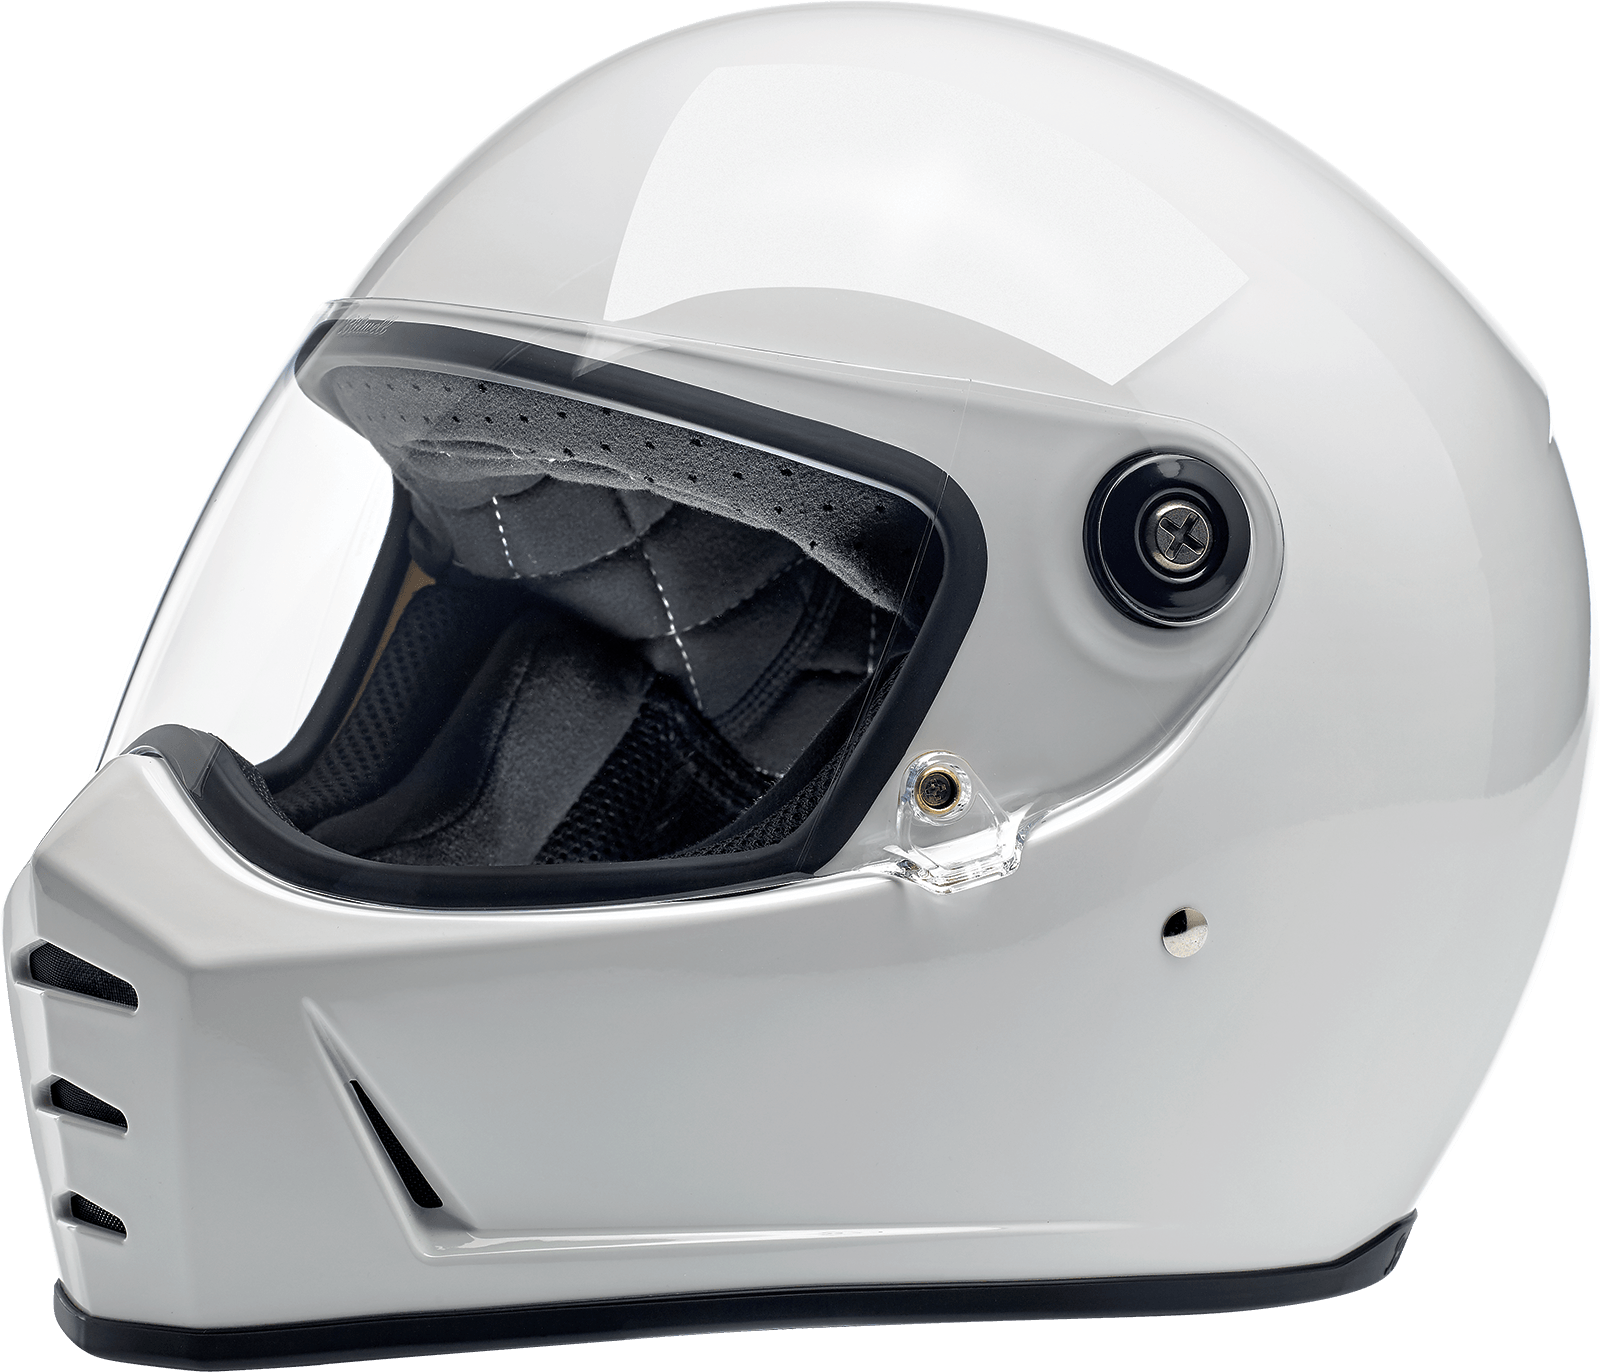 BILTWELL-Lane Splitter Helmets / Gloss Black-Helmet-MetalCore Harley Supply